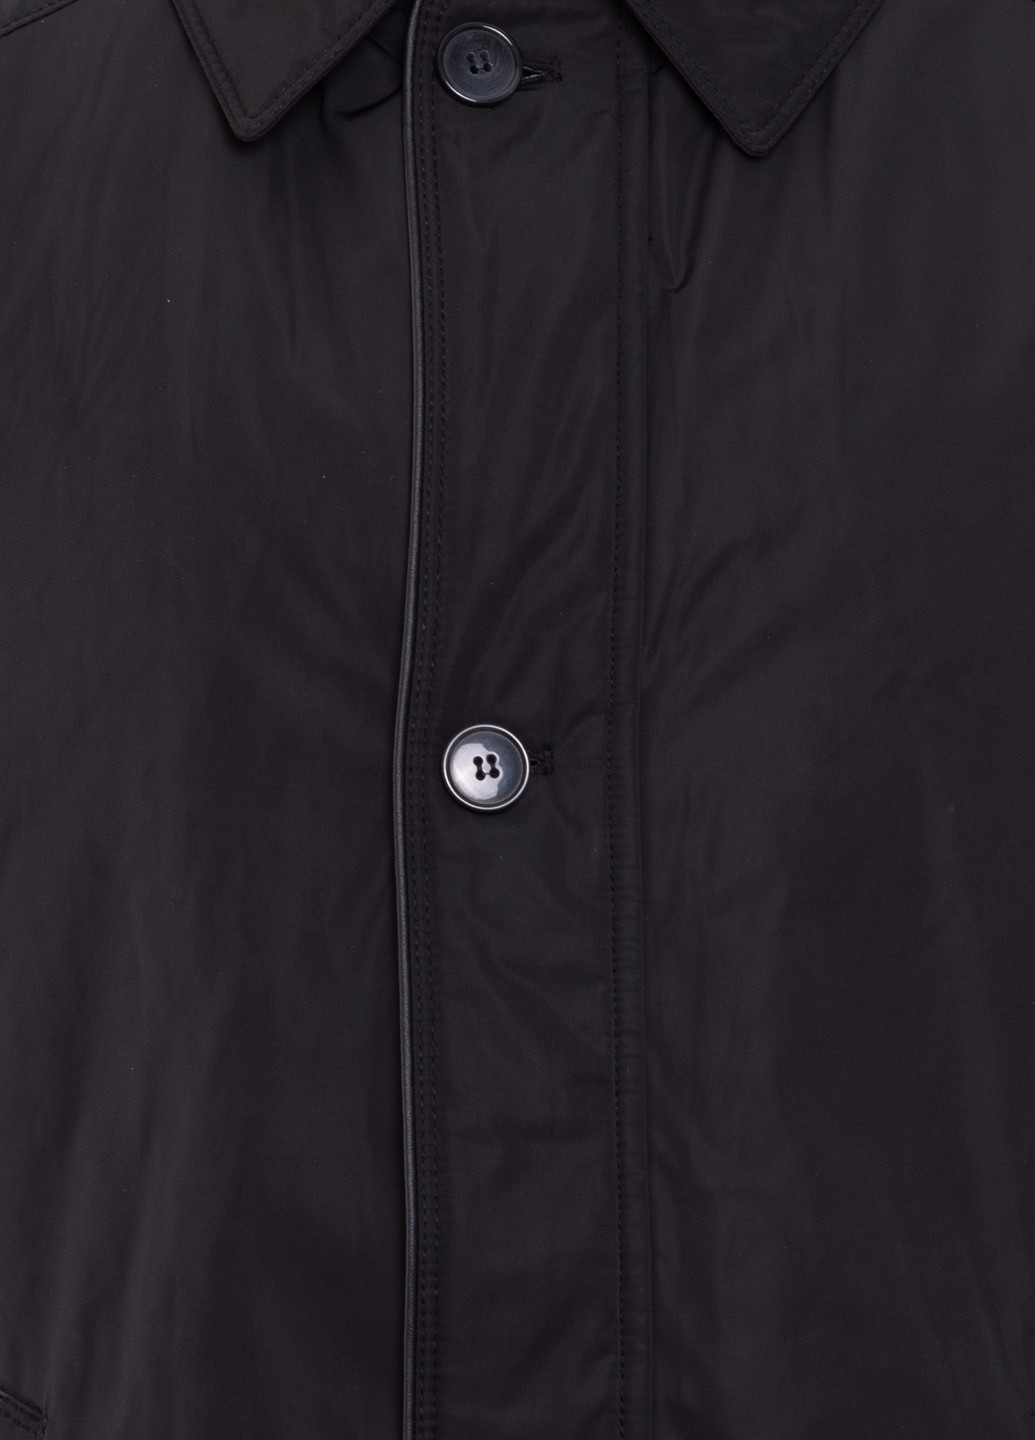 Черная демисезонная удлиненная куртка модель 2234 Santoryo